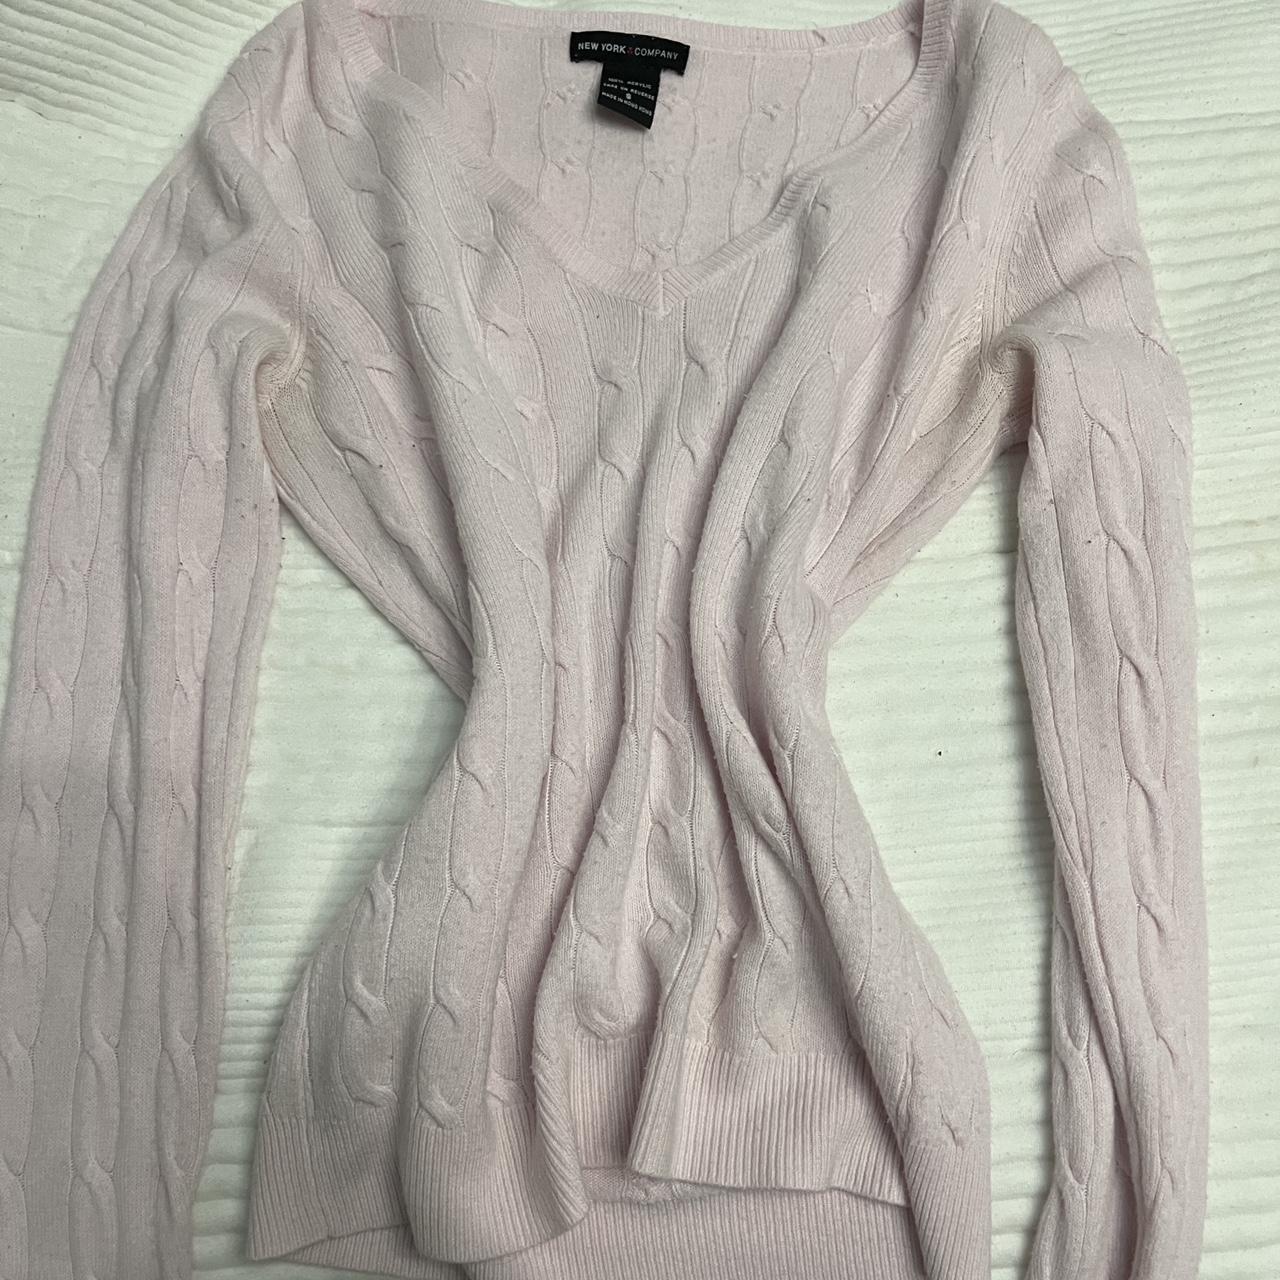 light pink v neck sweater - Depop